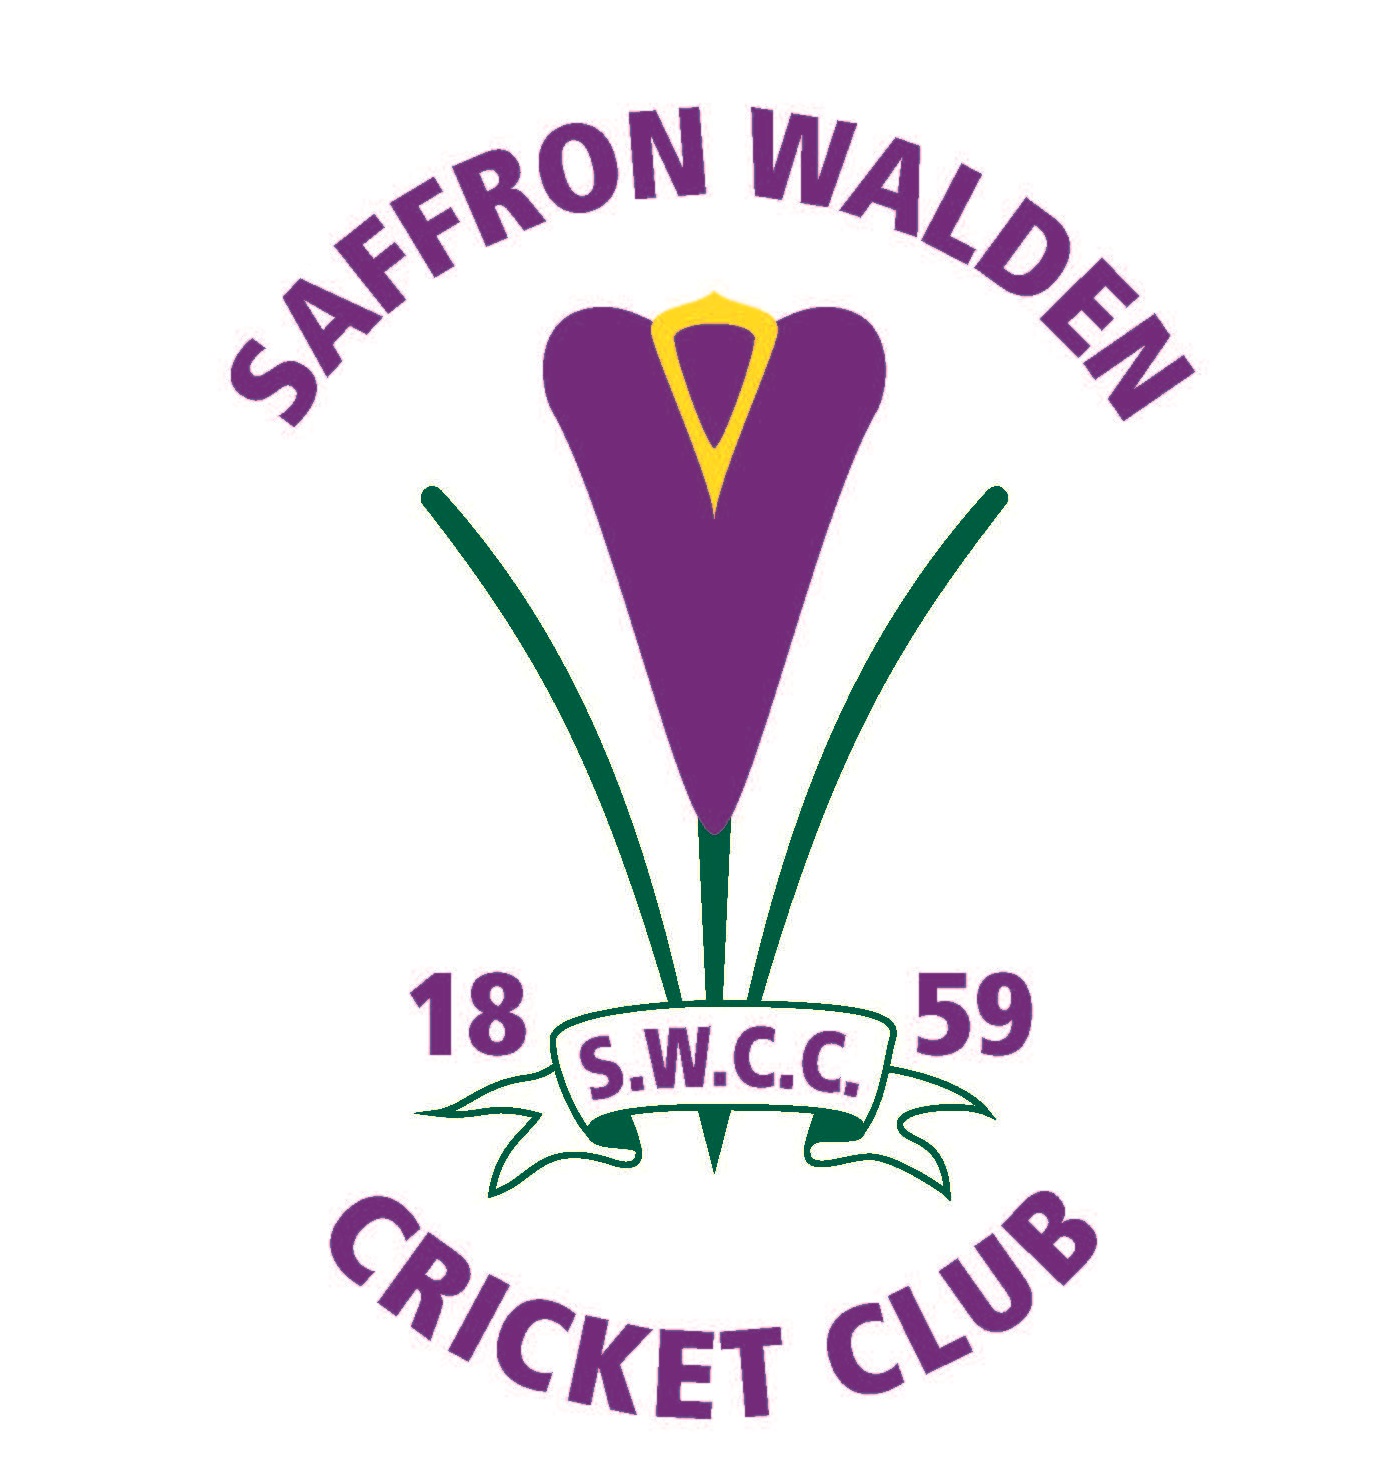 Saffron Walden Cricket Club